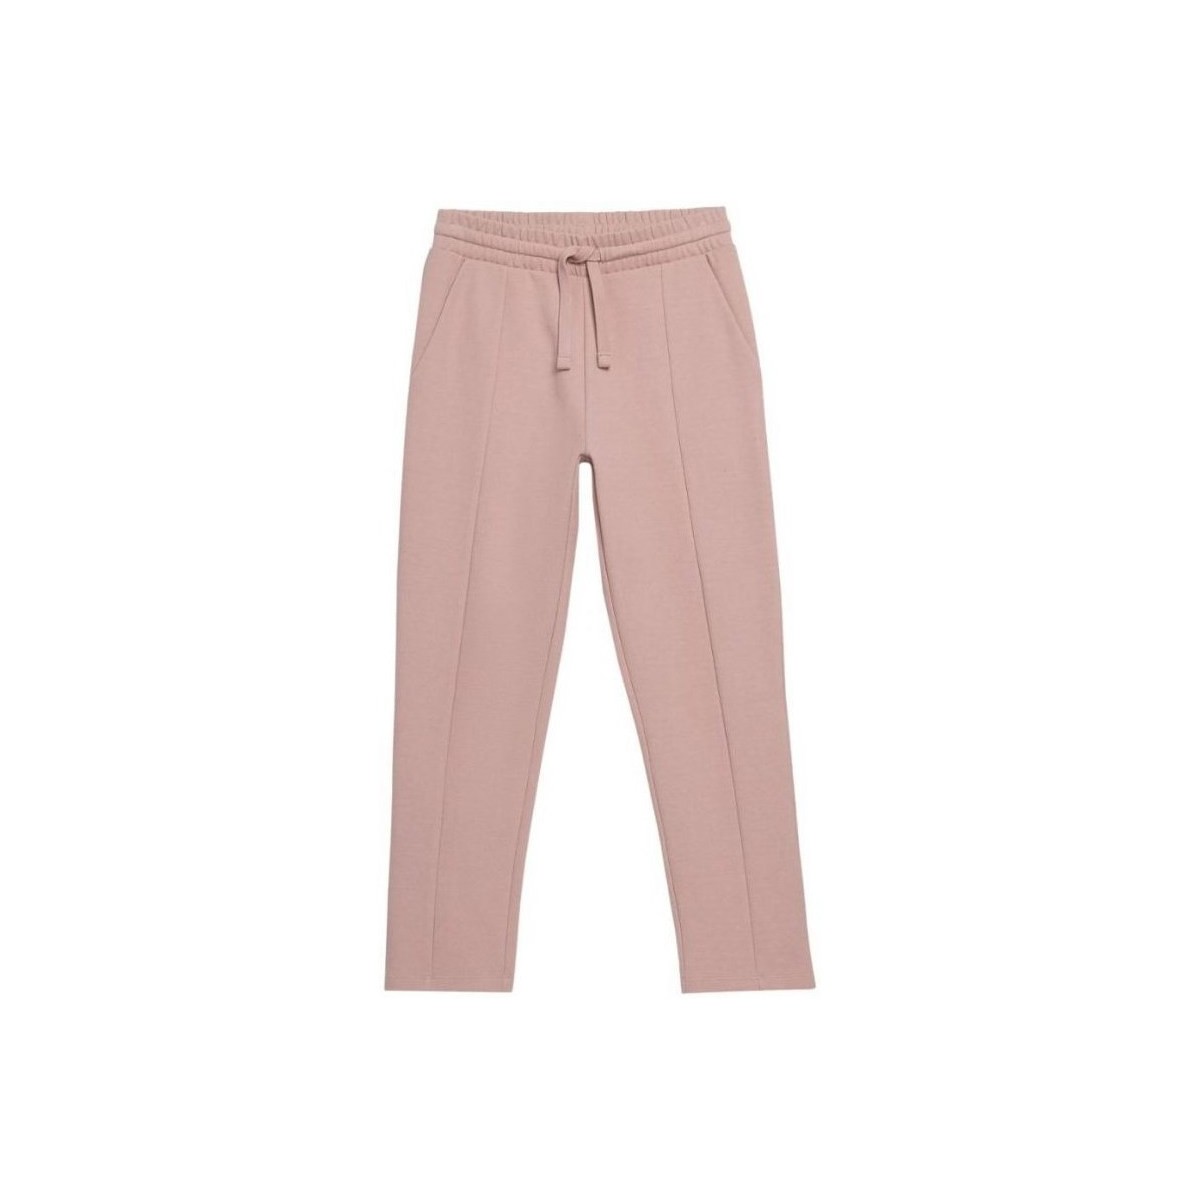 Textiel Dames Broeken / Pantalons Outhorn SPDD603 Roze